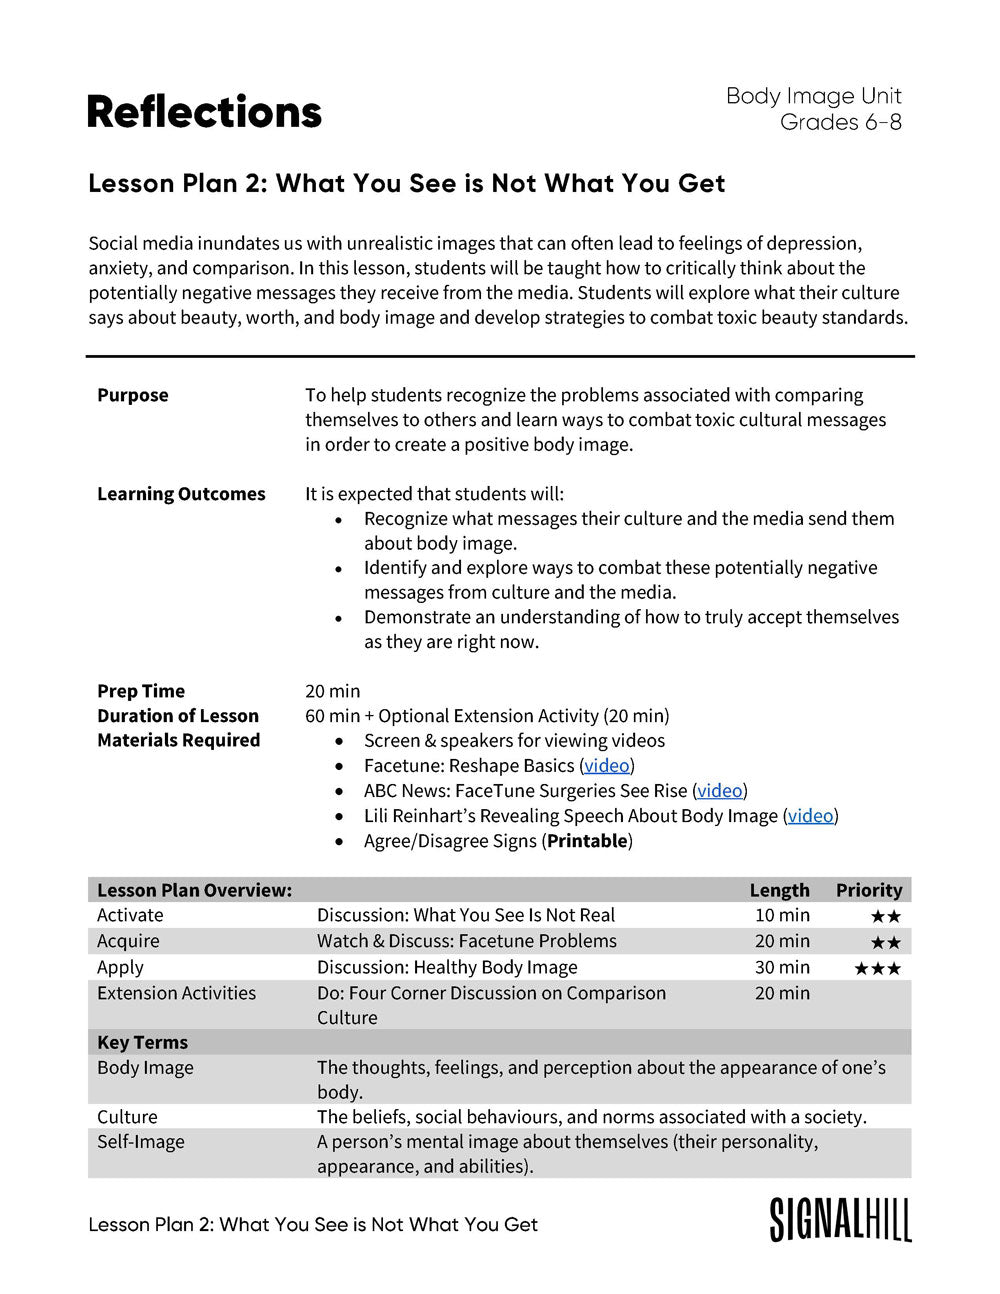 Reflections - Lesson Plan Bundle (4 Lesson Plans)